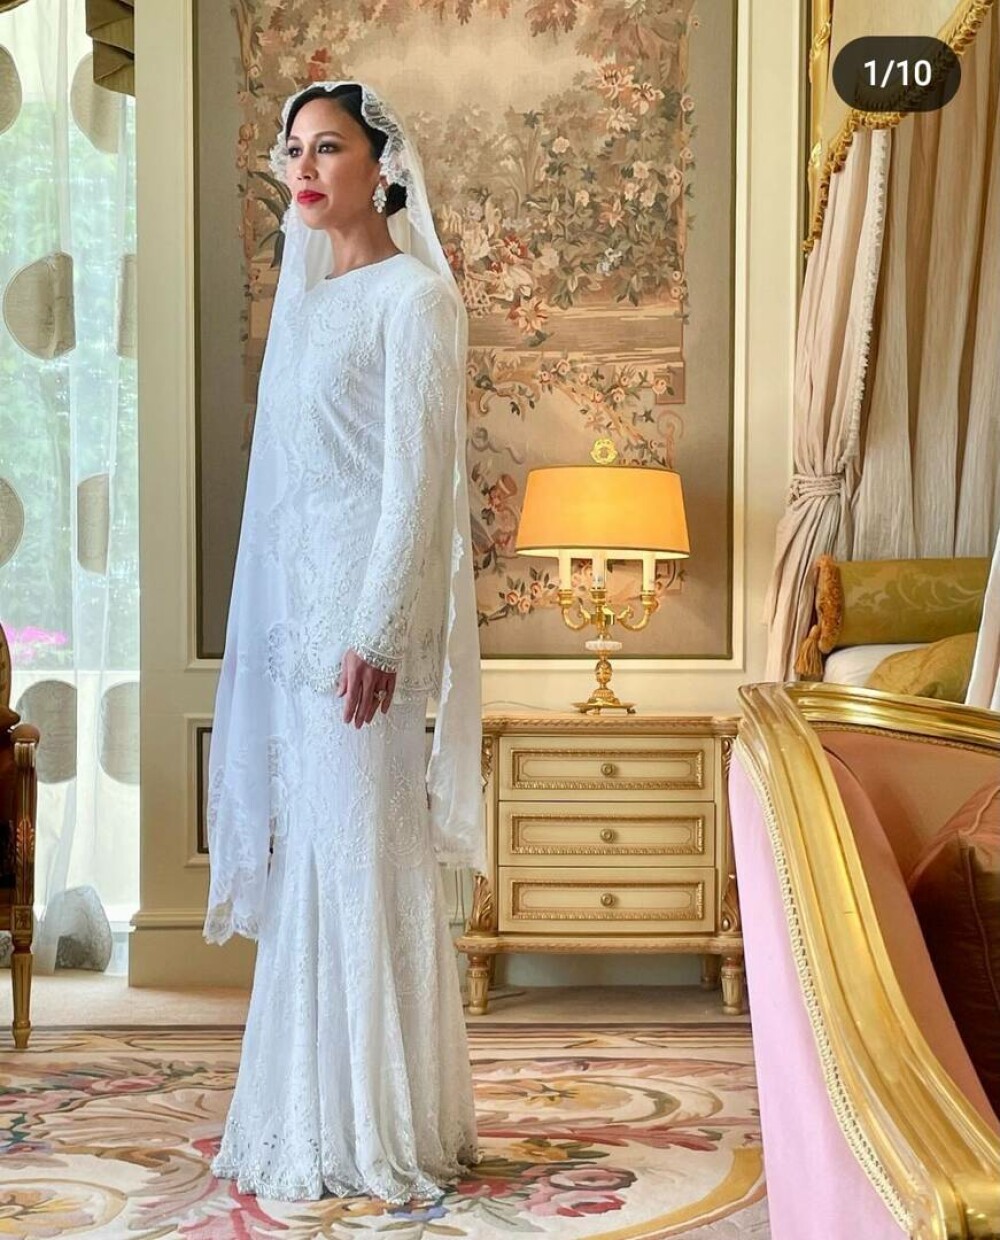 Nuntă regală fastuoasă în Brunei. Prințesa Azemah Bolkiah s-a căsătorit cu verișorul ei, prințul Muda Bahar - GALERIE FOTO - Imaginea 15